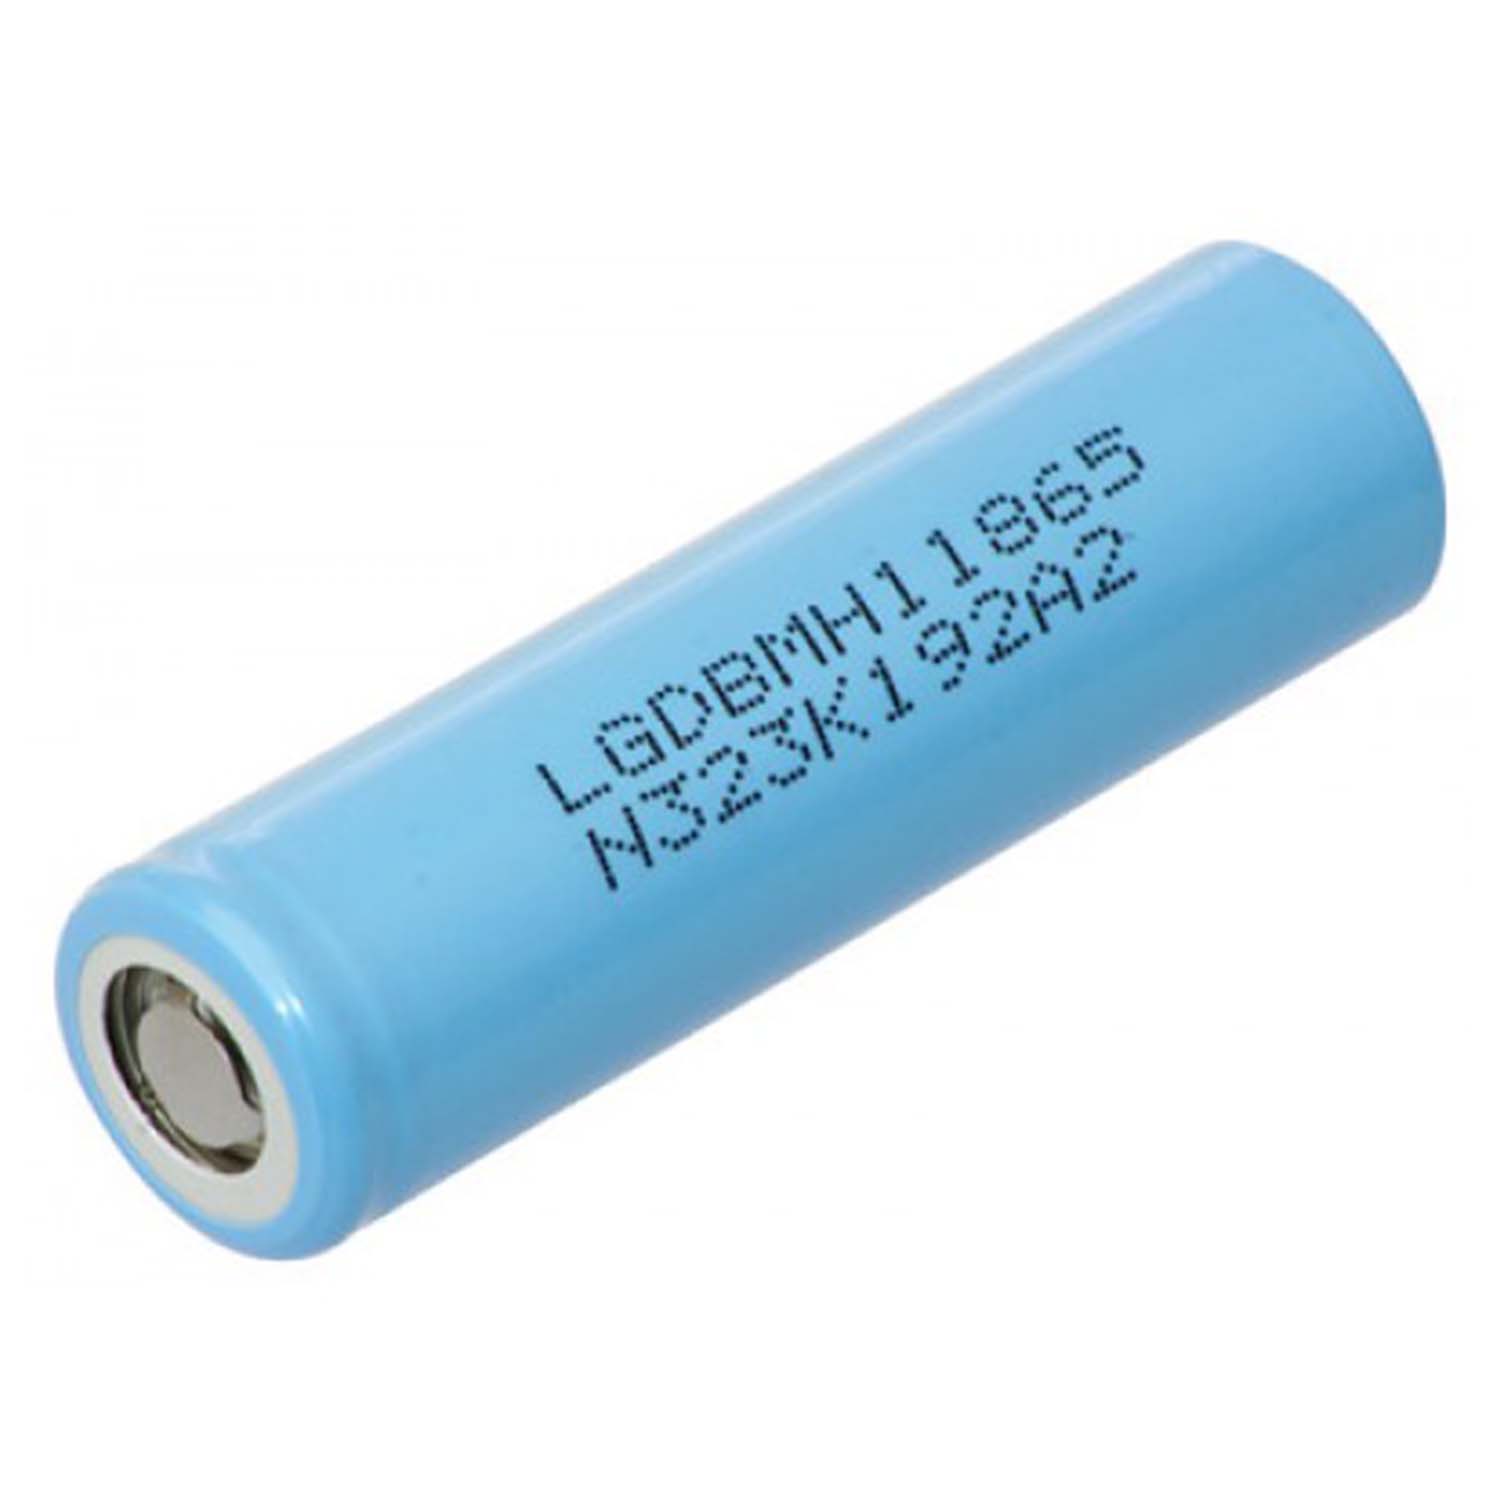 LG Li-Ion battery 18650 MH1 3,7V 3200mAh - Trail Cameras